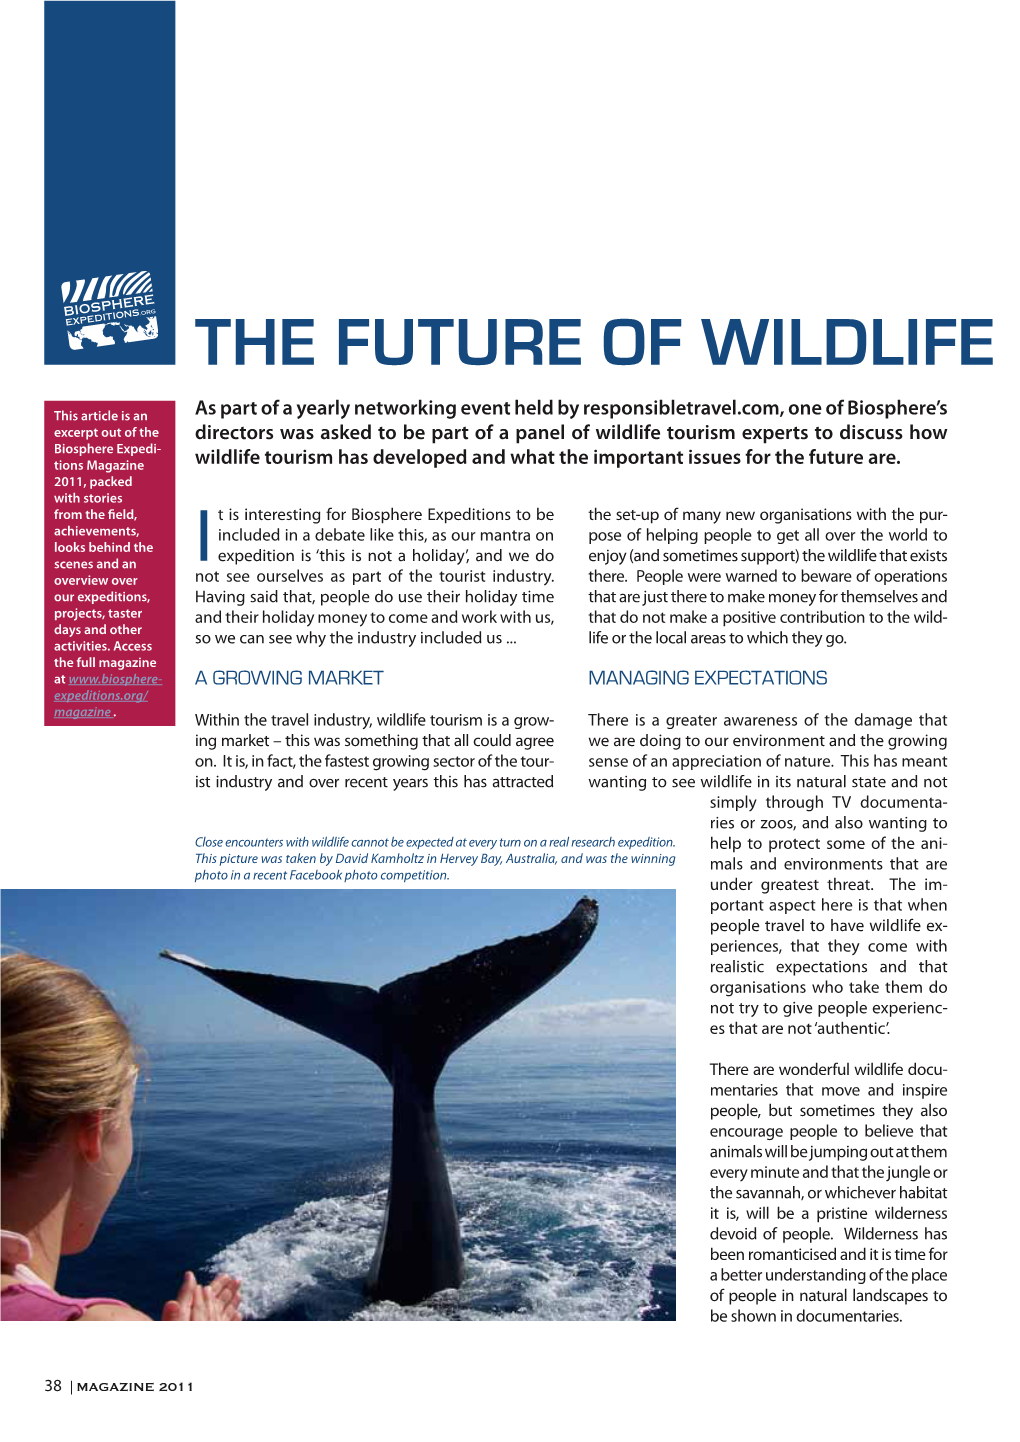 The Future of Wildlife Tourism